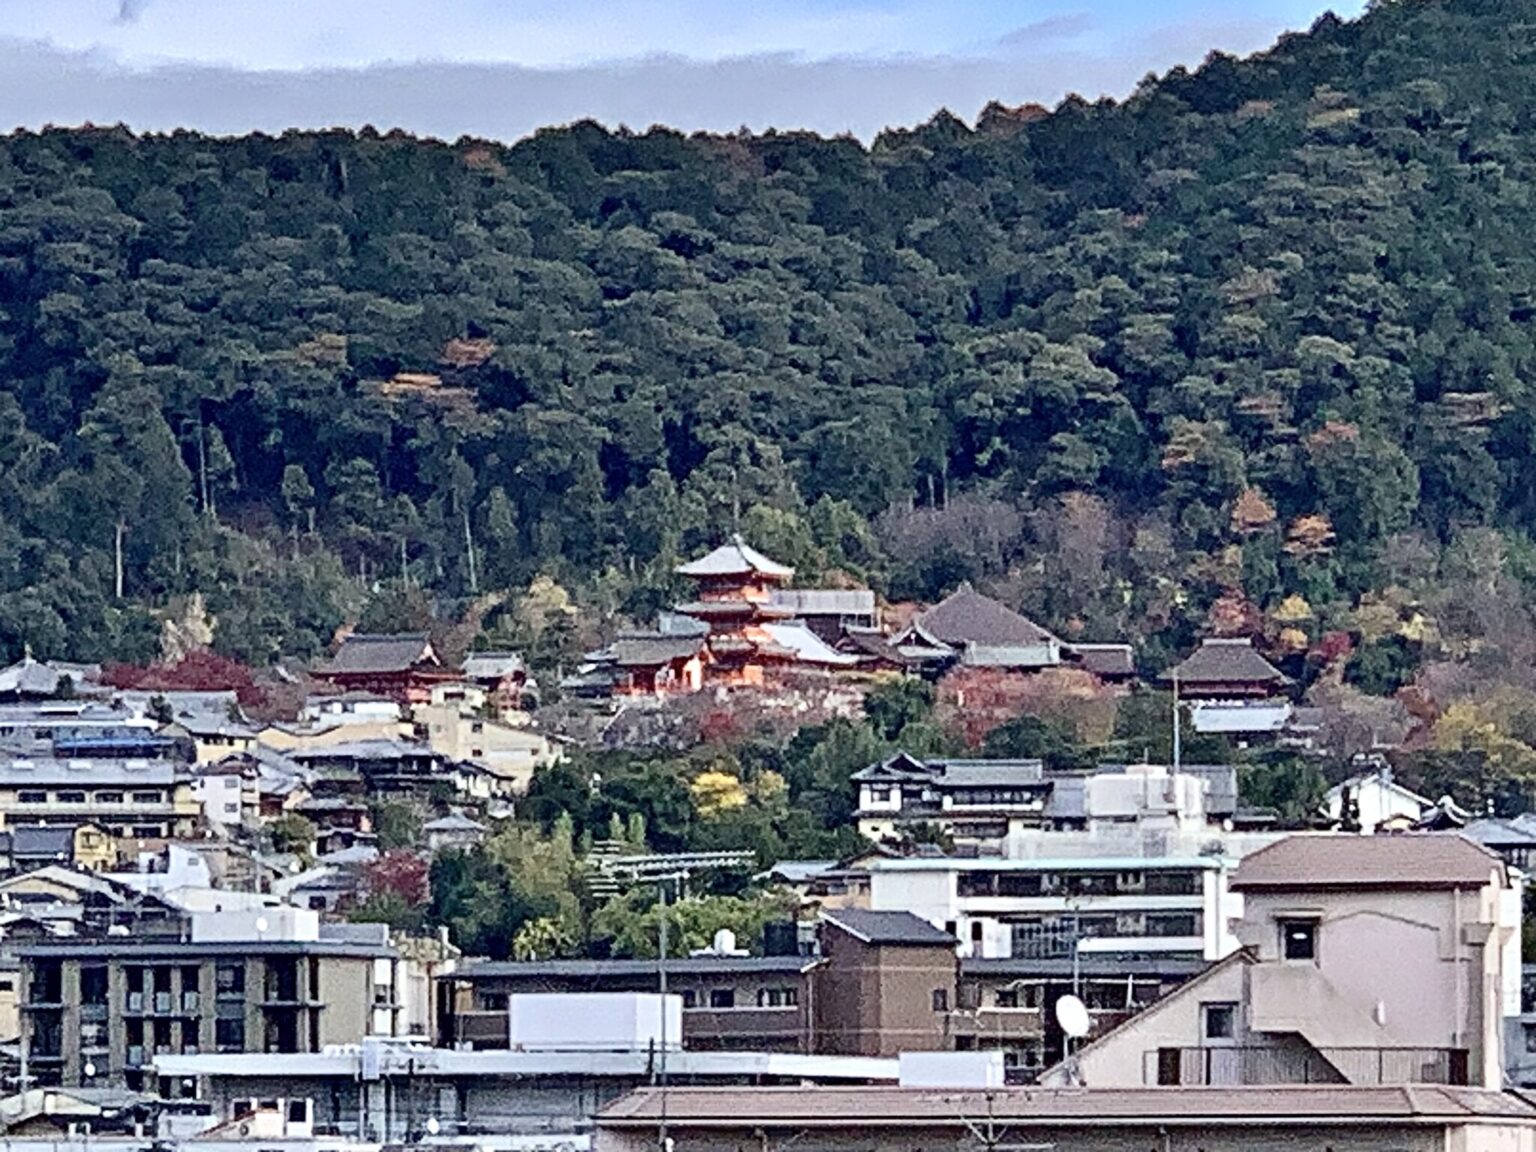 清水寺もすぐそこに見え、8月16日に『京都五山送り火』も眺められたそう。